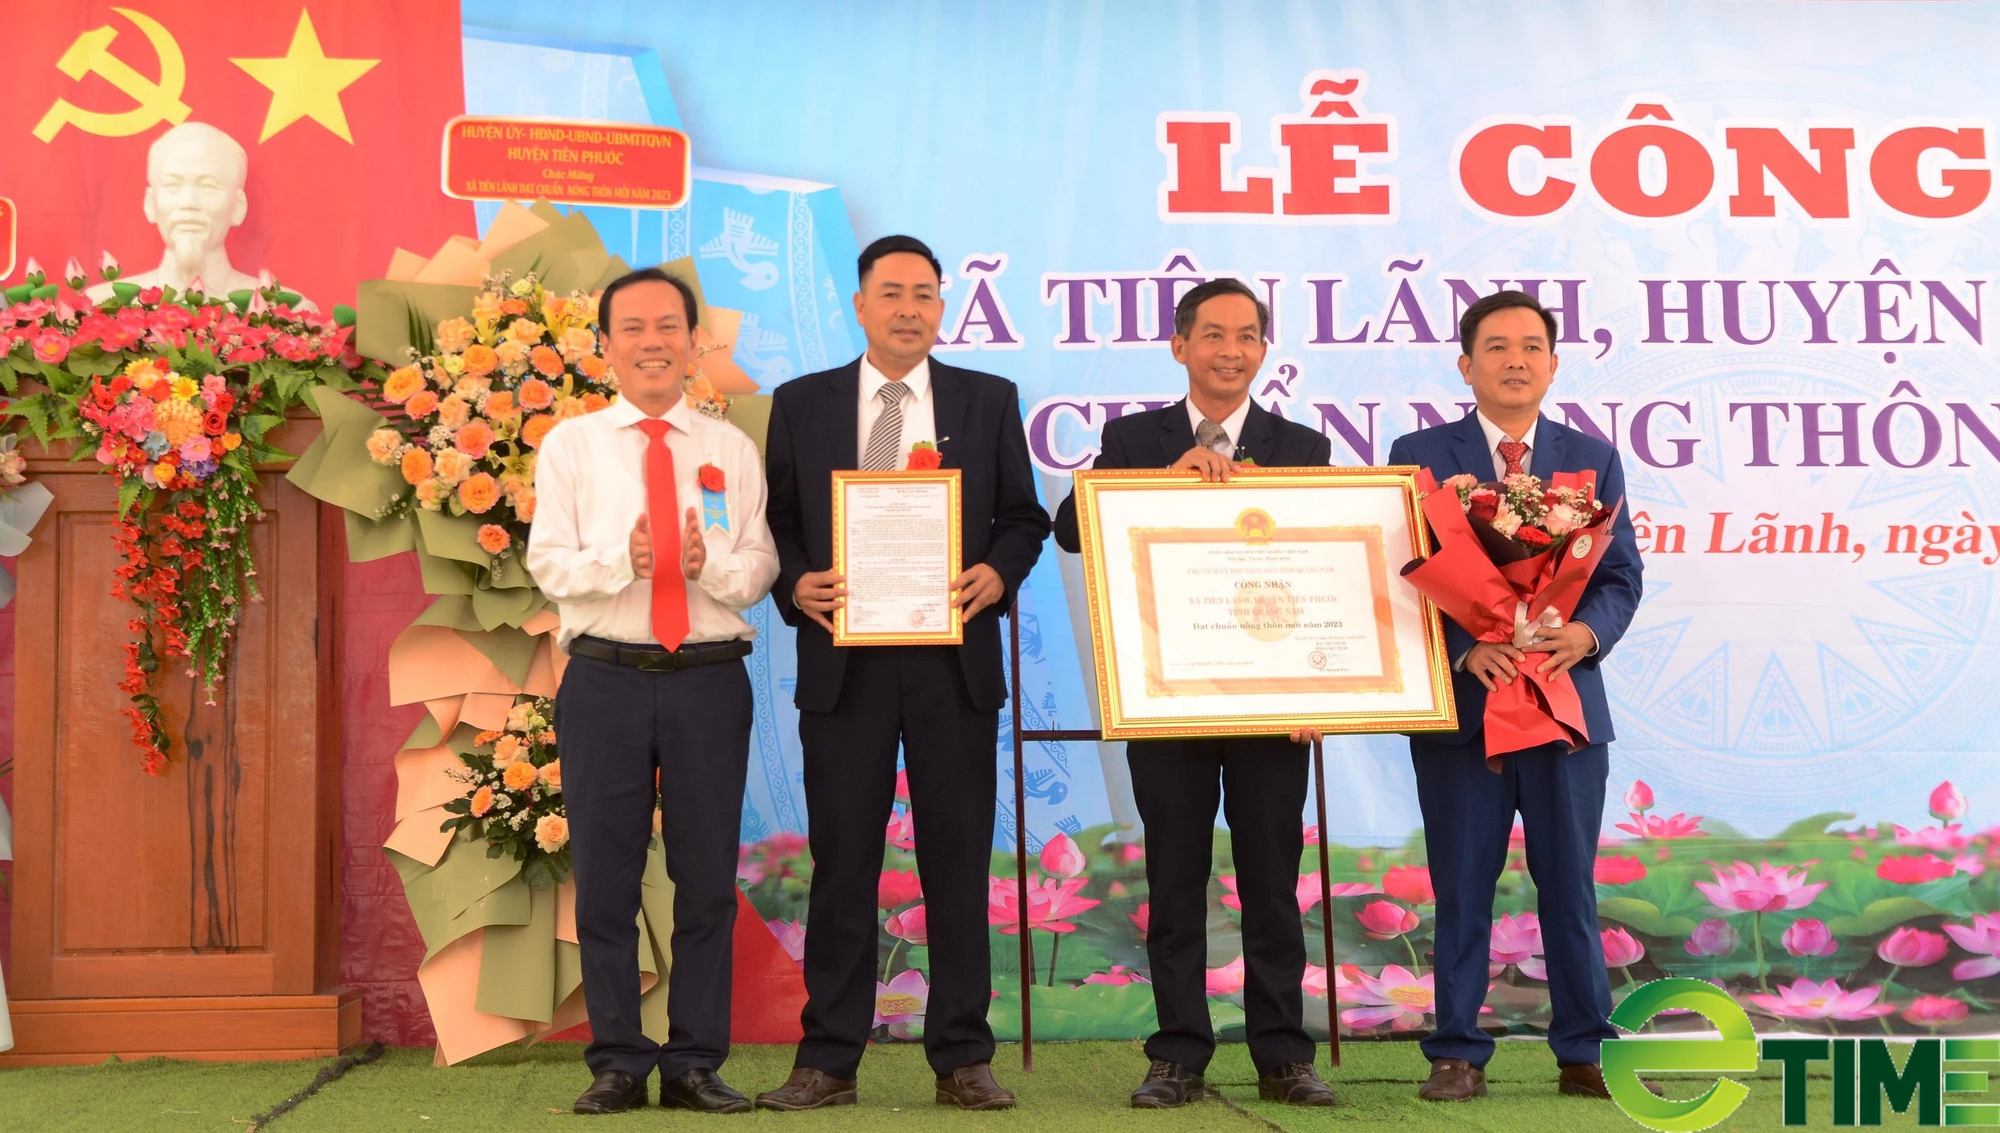 Sau 8 năm xây dựng nông thôn mới, xã Tiên Lãnh ở Quảng Nam công bố đạt chuẩn- Ảnh 1.